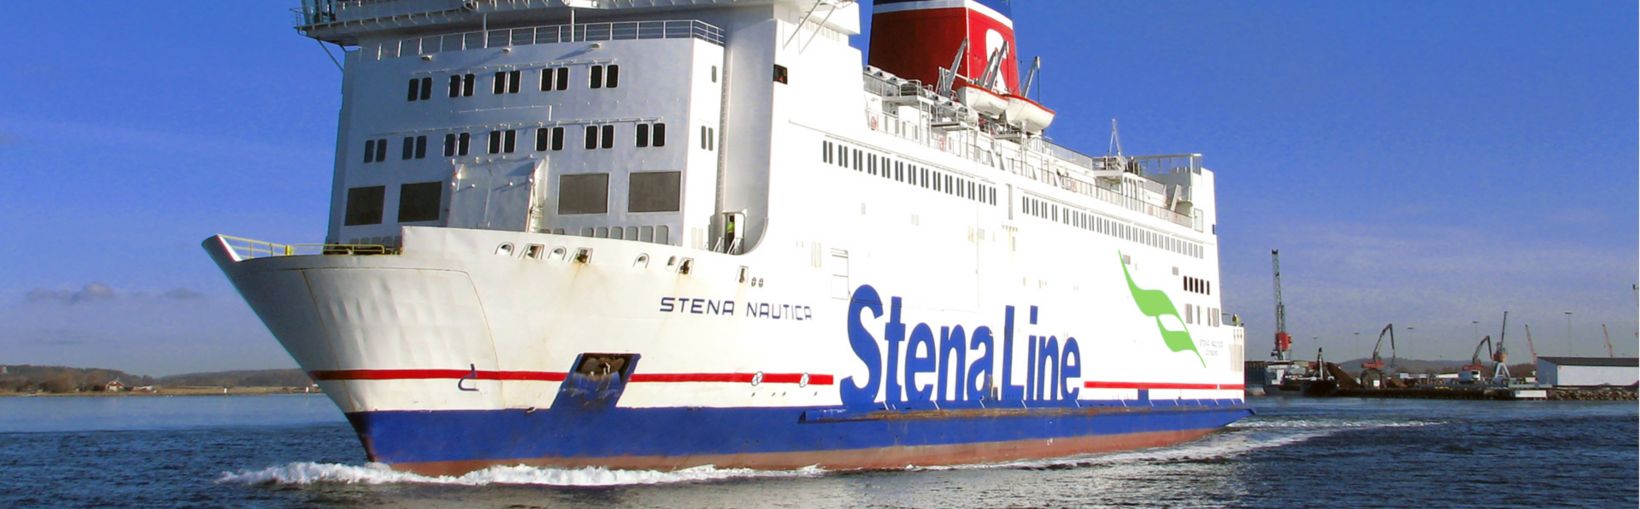 Stena Nautica ferry at sea